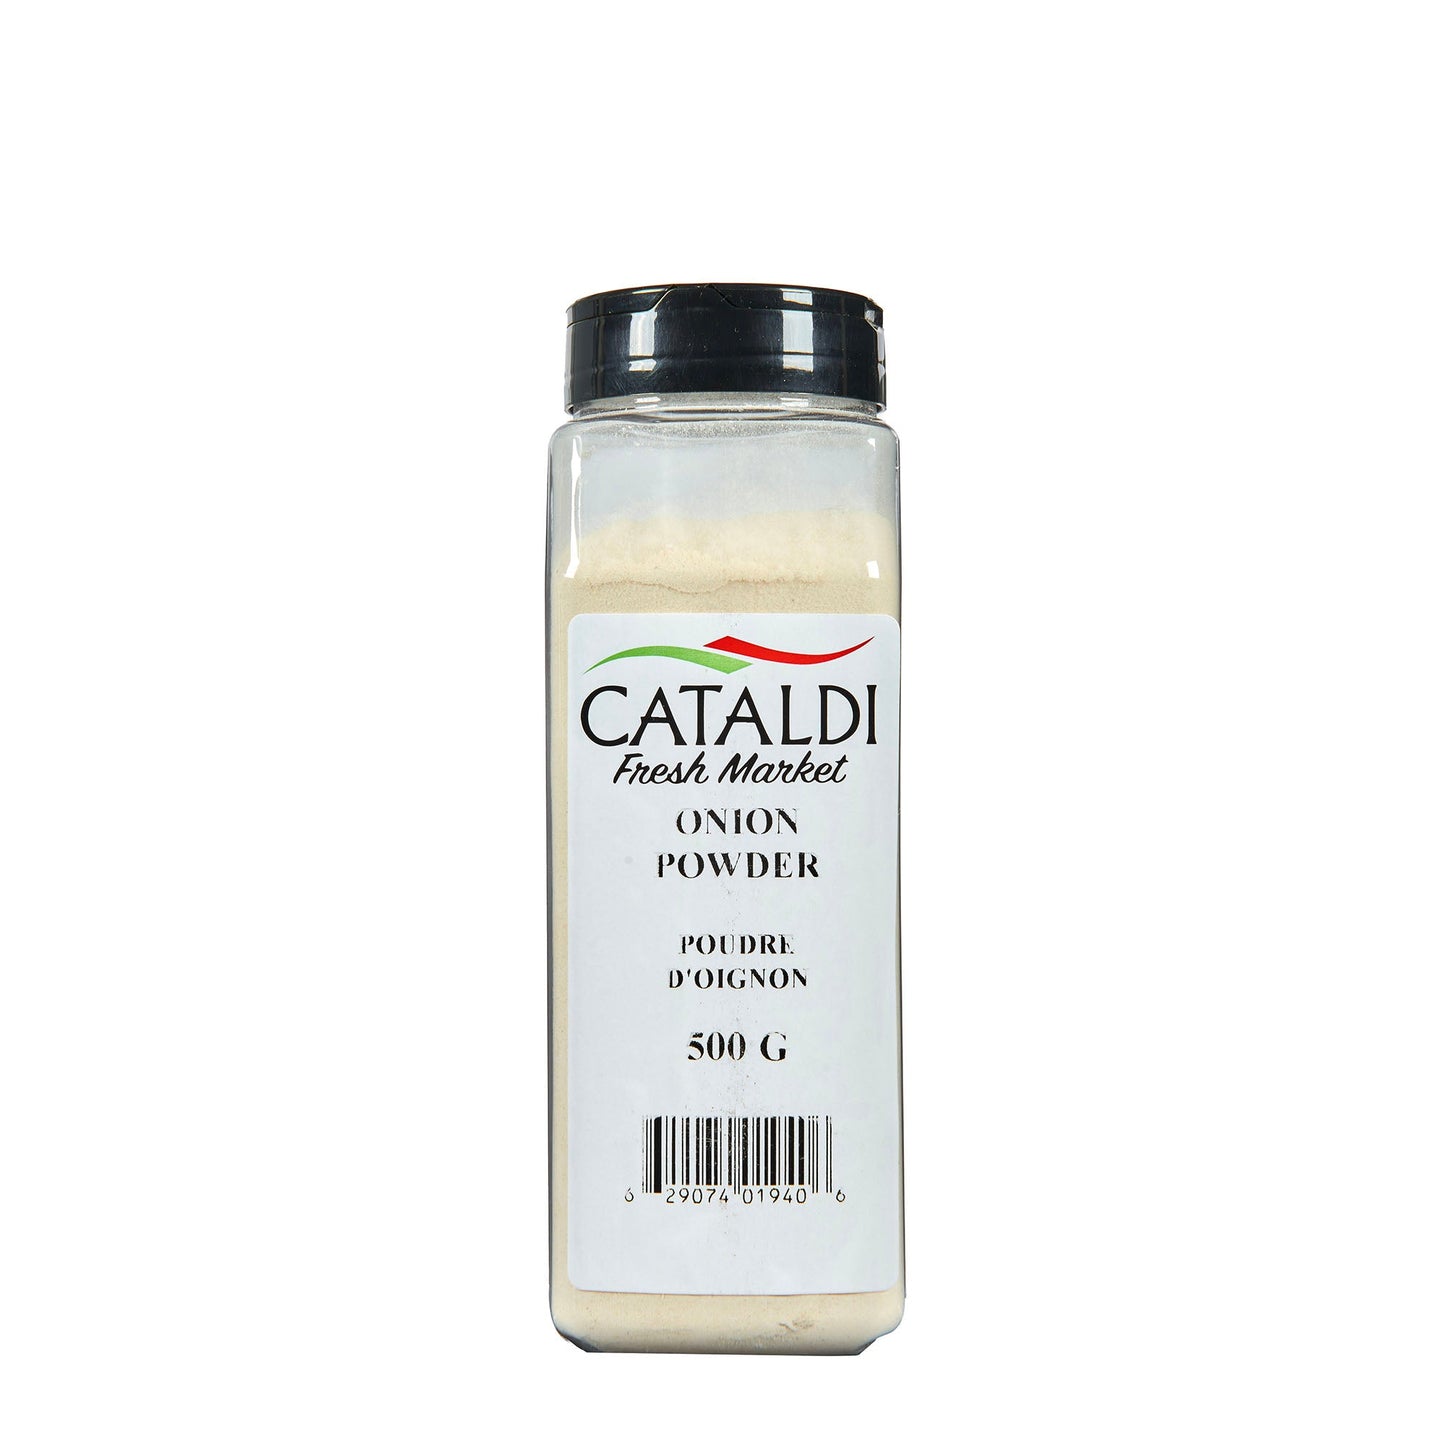 Cataldi Onion Powder 500G